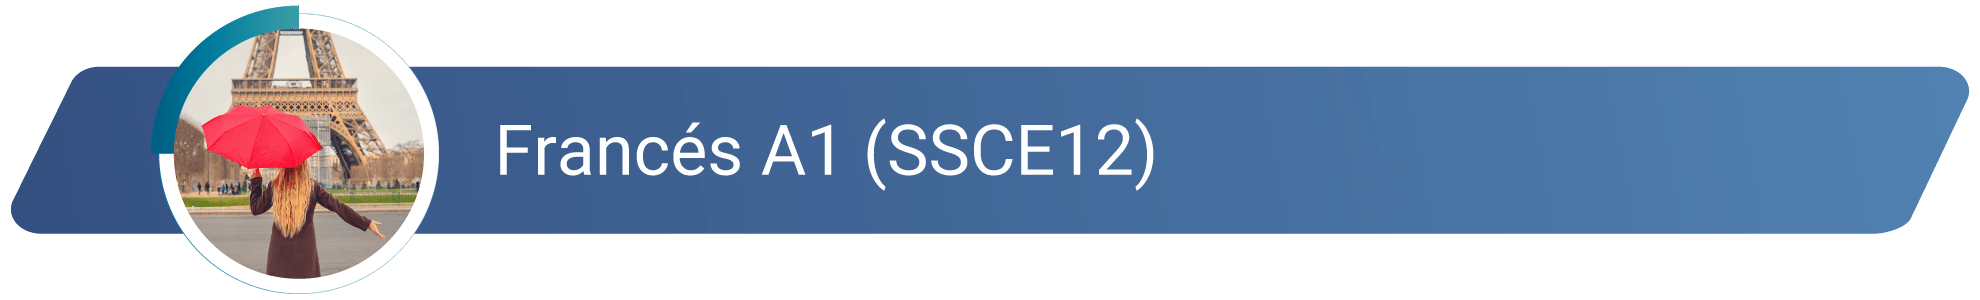 SSCE12 - Francés A1